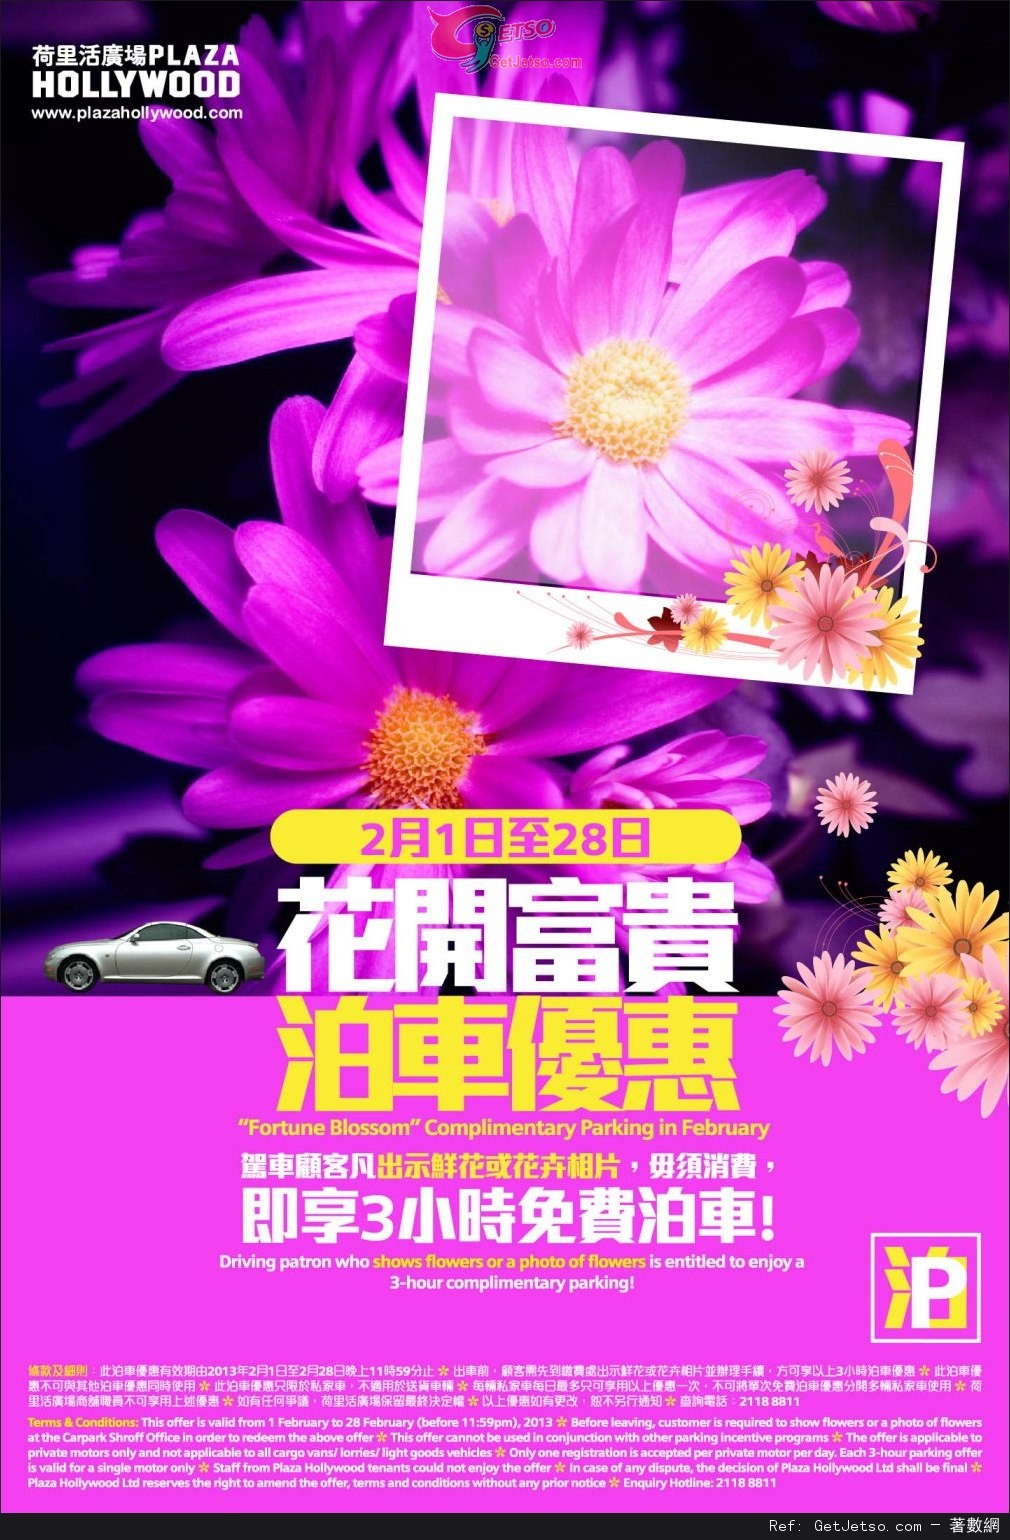 荷里活廣場出示花卉相片享3小時免費泊車優惠(至13年2月28日)圖片1